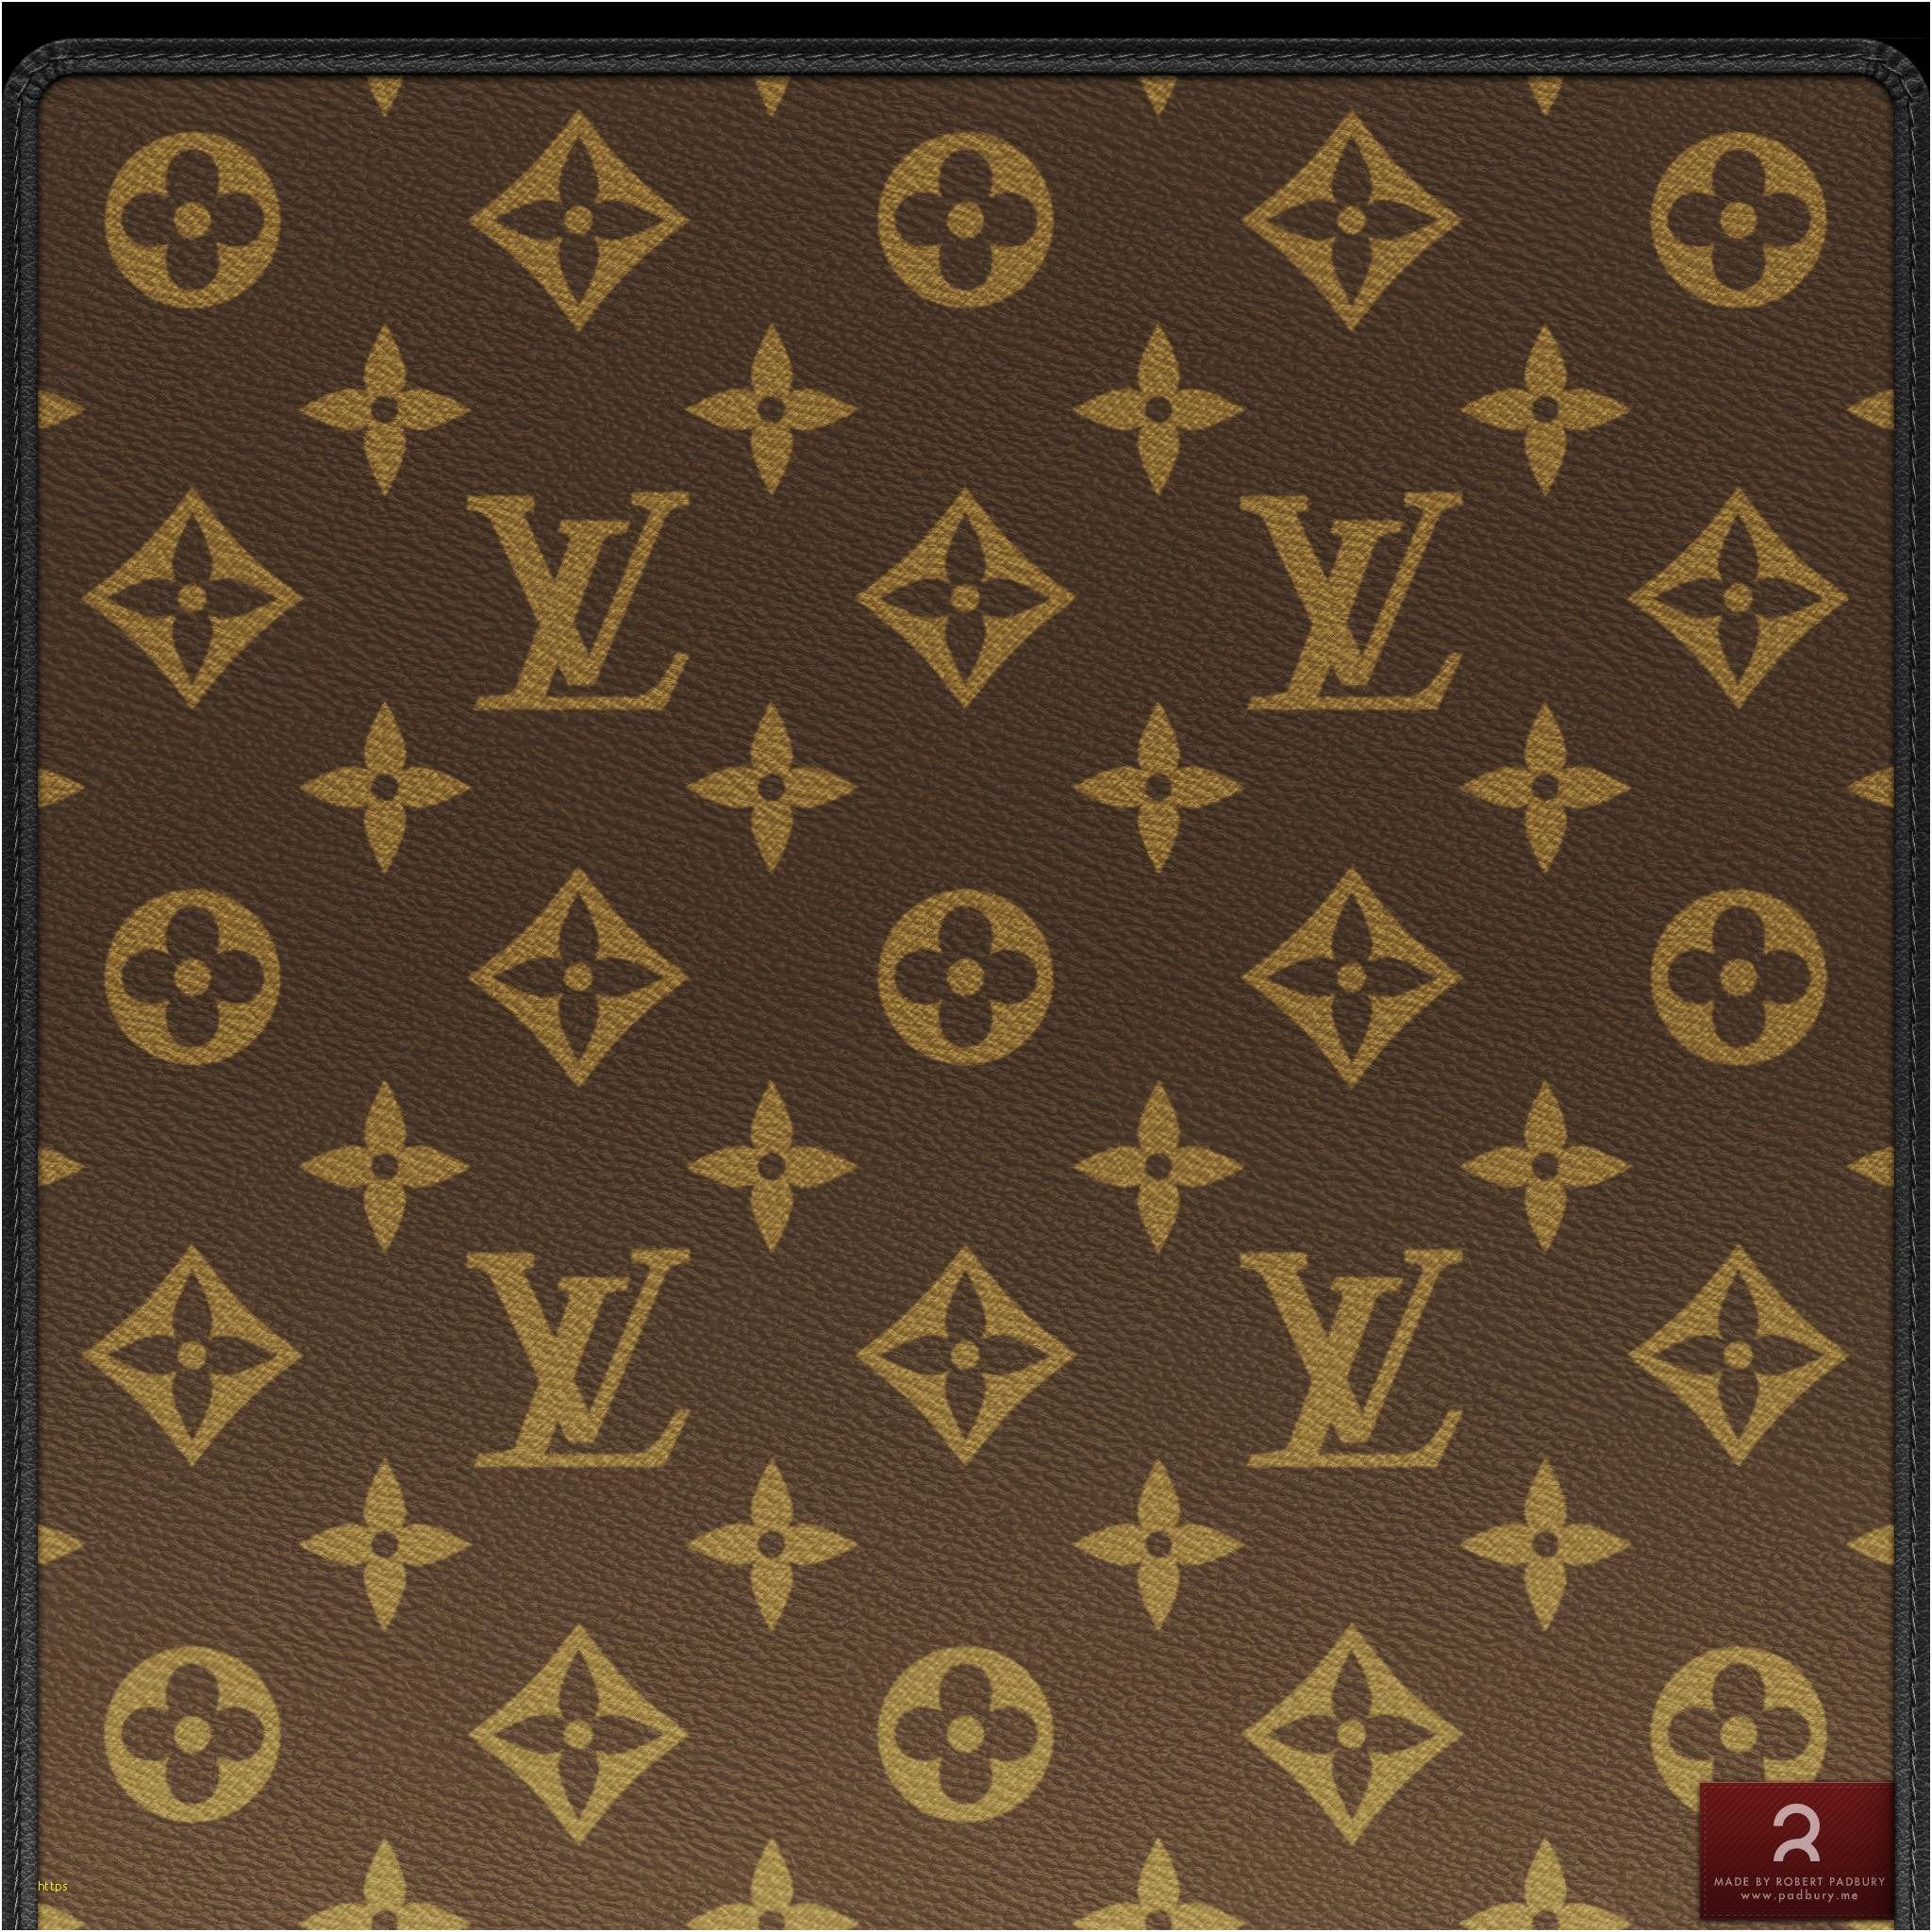 Louis Vuitton Laptop Wallpapers on WallpaperDog